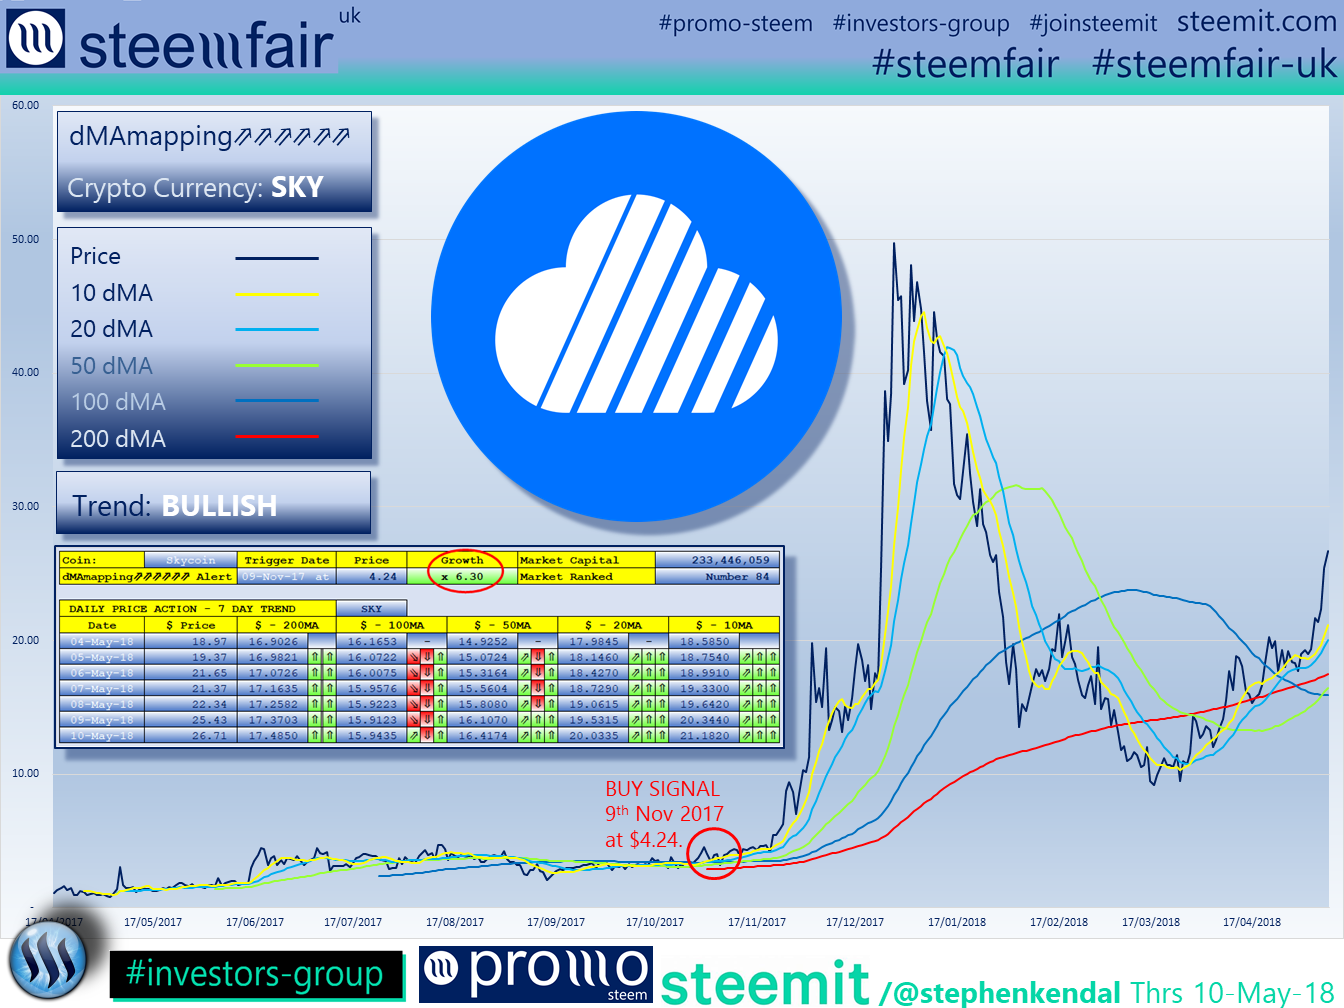 SteemFair SteemFair-uk Promo-Steem Investors-Group Skycoin